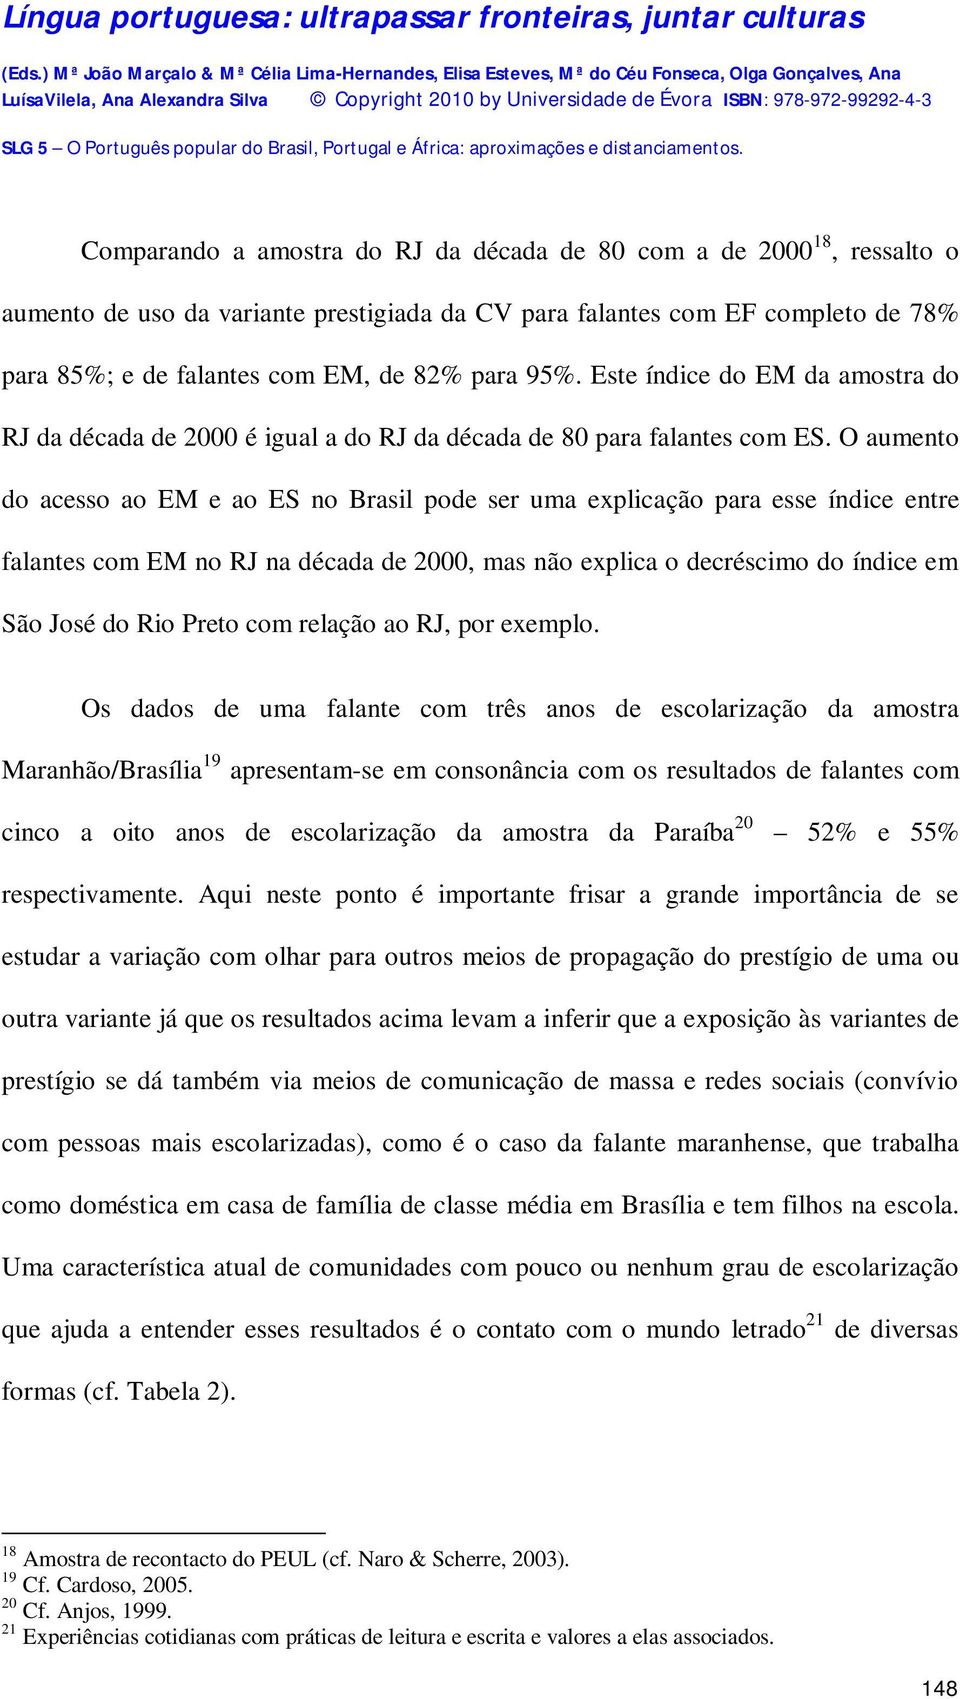 O aumento do acesso ao EM e ao ES no Brasil pode ser uma explicação para esse índice entre falantes com EM no RJ na década de 2000, mas não explica o decréscimo do índice em São José do Rio Preto com